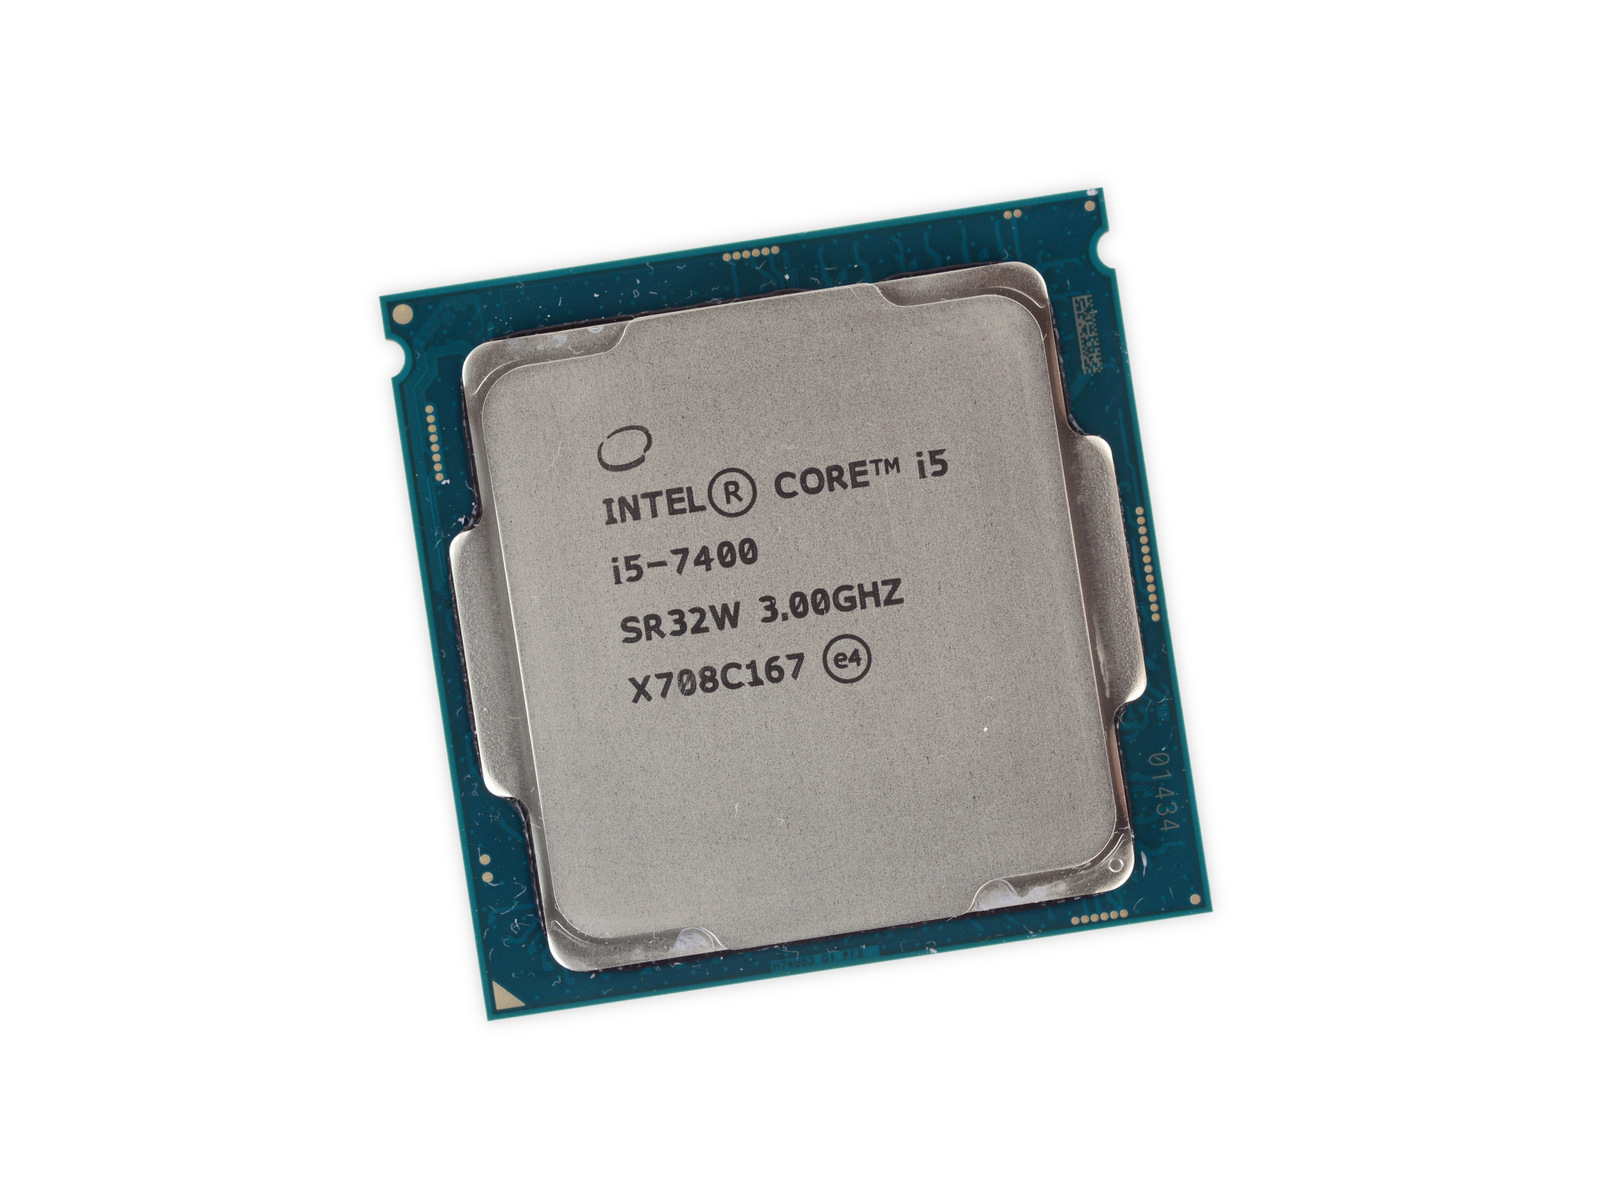 Интел коре 7400